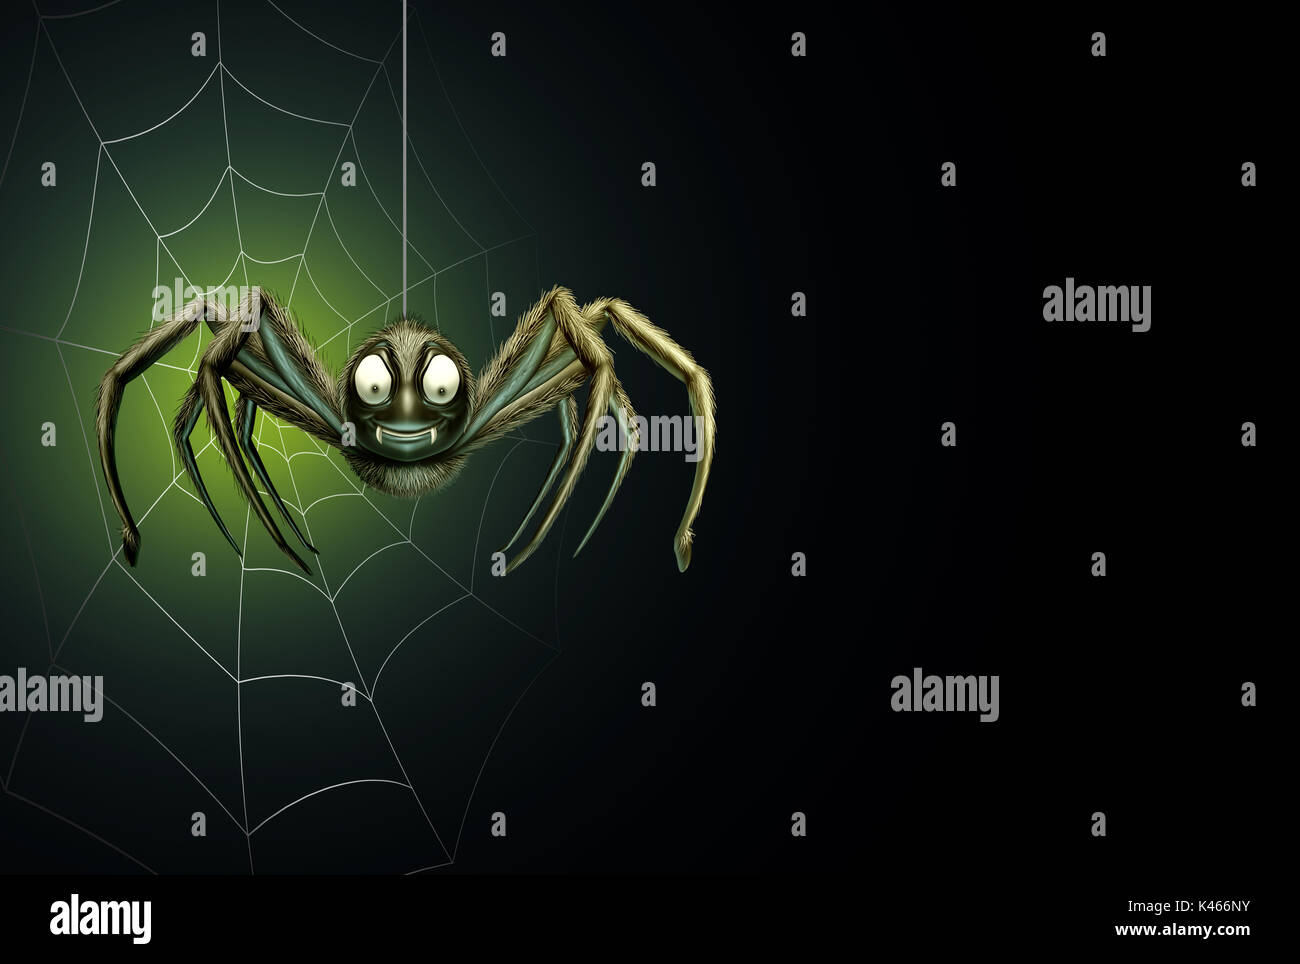 Halloween Spider comme un arrière-plan de l'insecte arachnide creepy crawler suspendue à un thread avec une araignée sur une zone vierge noire pour le texte ou promo Banque D'Images